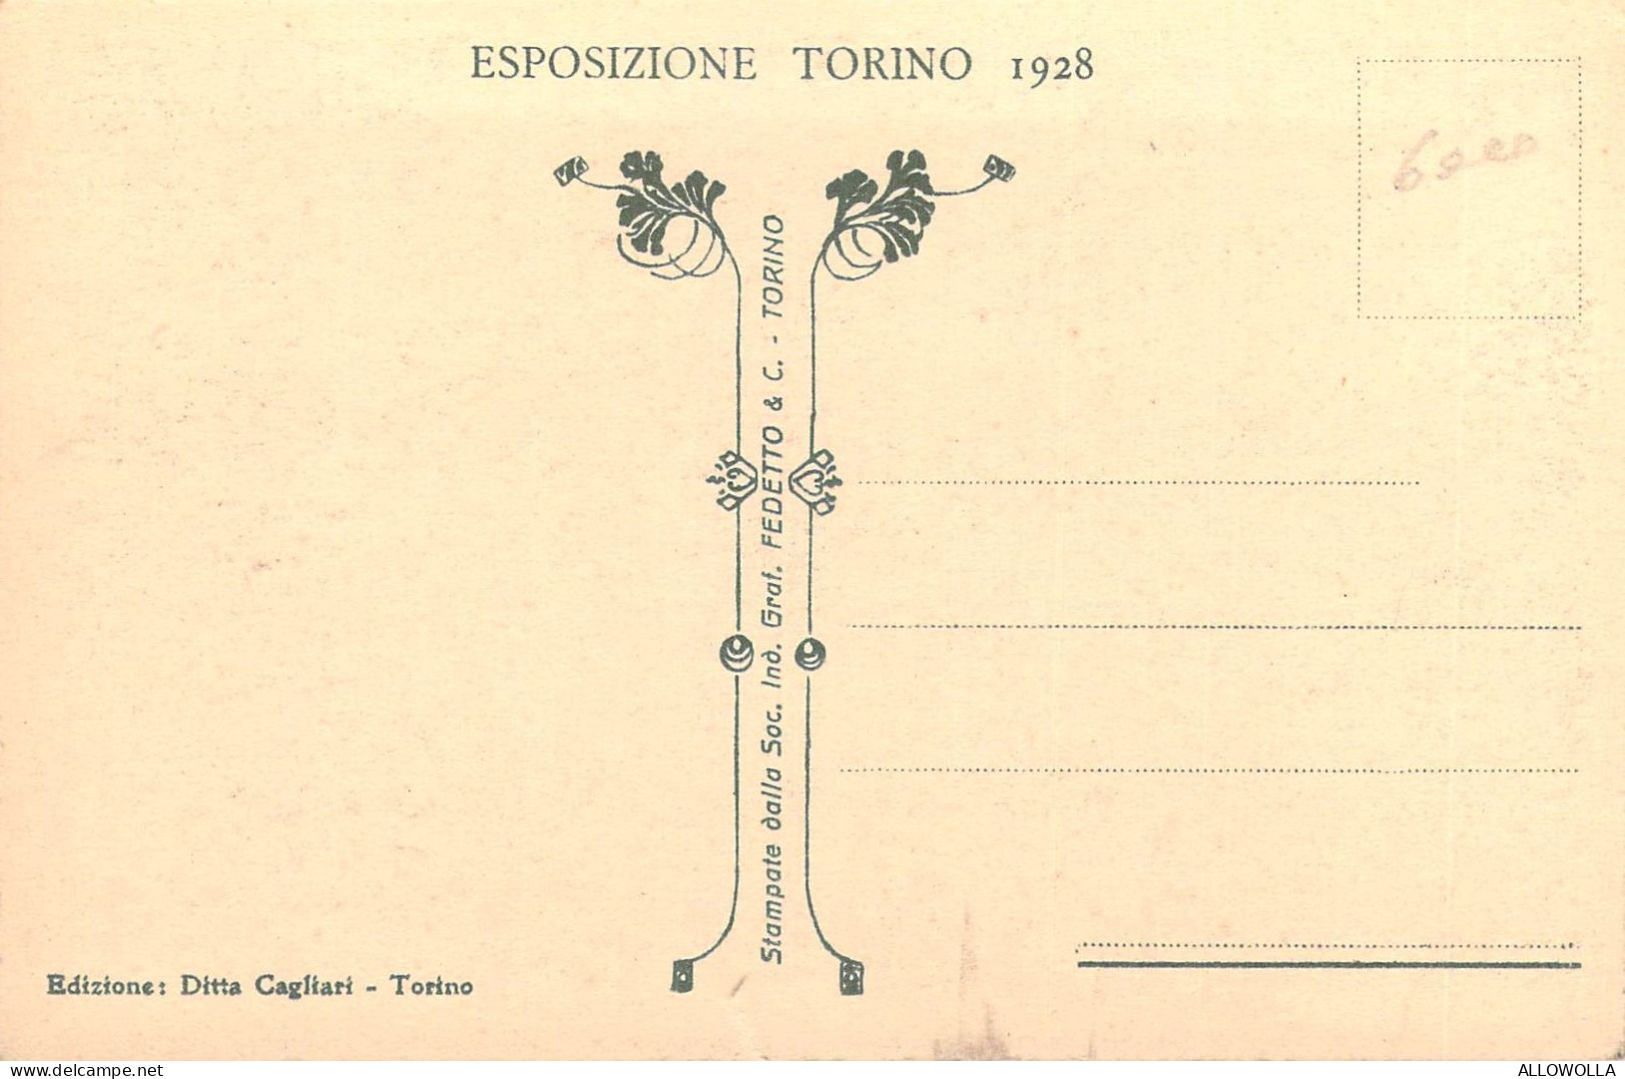 24201 "TORINO-PALAZZINA UFFICIO TECNICO ESPOSIZIONE-ESPOSIZIONE TORINO1928"-VERA FOTO-CART. NON SPED. - Expositions